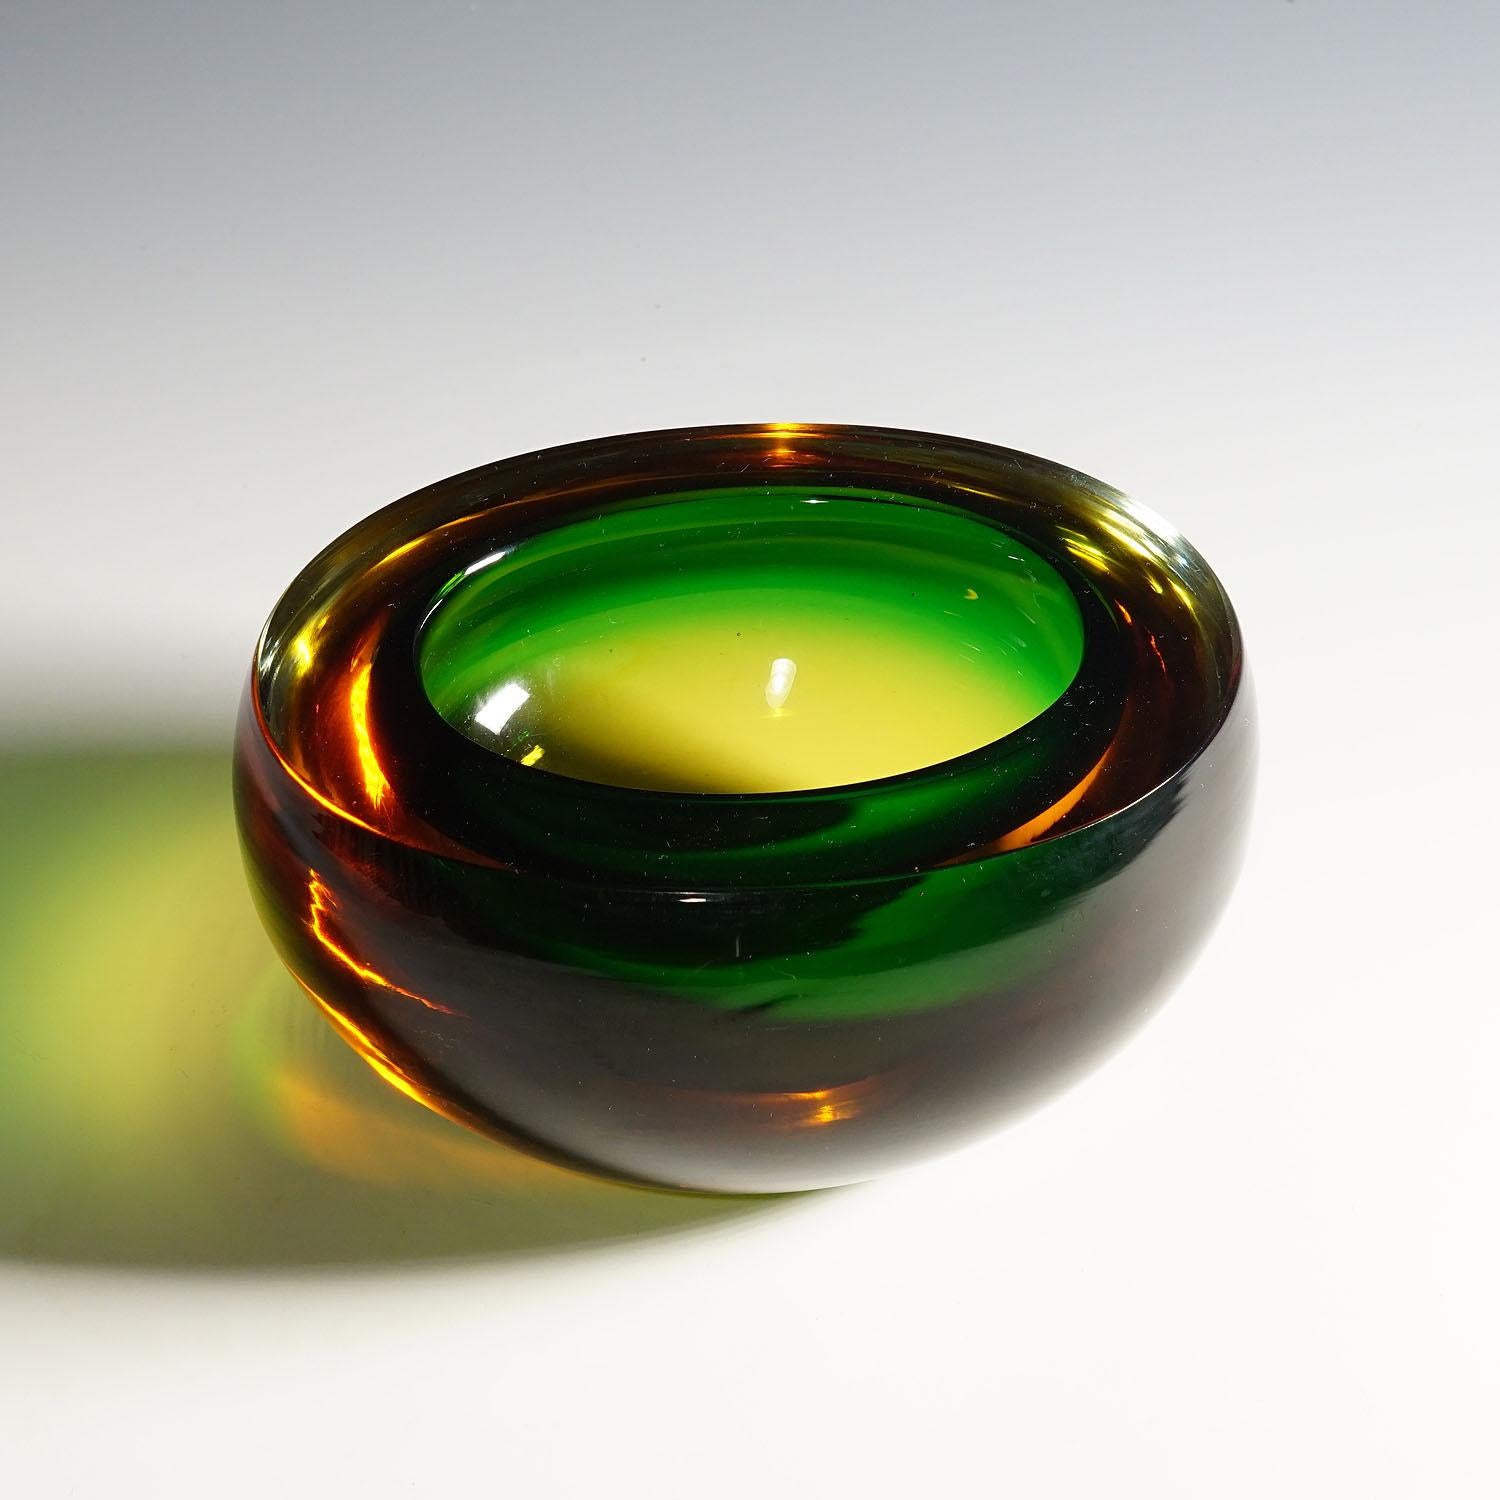 Midcentury Modern Murano Green and Amber Sommerso Art Glass Bowl 1960s

Eine schwere Murano-Sommerso-Glasschale, hergestellt von Vetreria Archimede Seguso um 1960. Hergestellt aus smaragdgrünem Glas mit einer dicken Überfangschicht aus Braunglas.